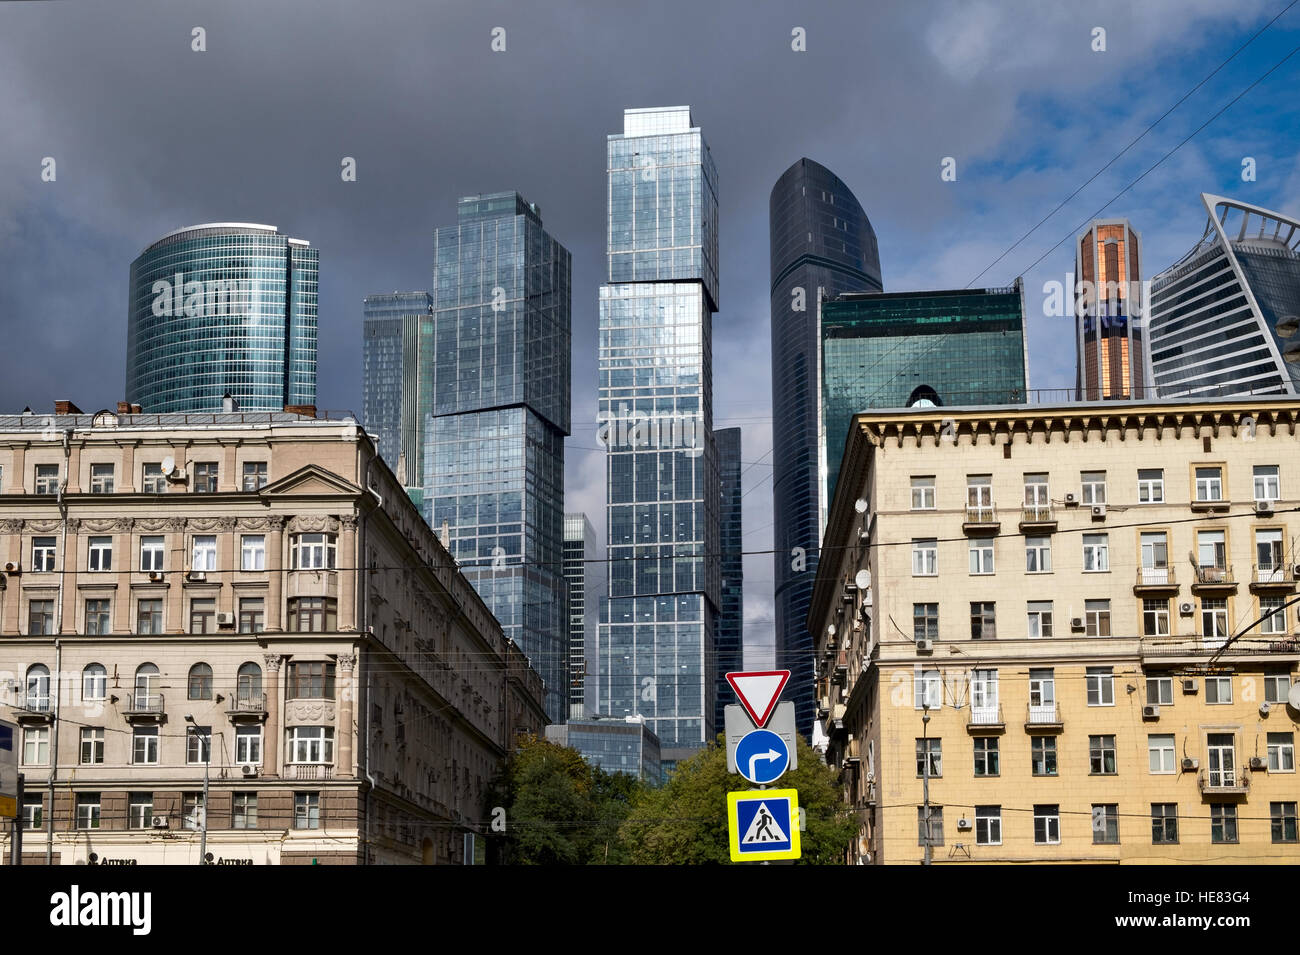 Moskau, Russland - 24 September: Wolkenkratzer von Moskau internationales Geschäftszentrum zwischen alten Häusern in Moskau am 24. September 2016 Stockfoto